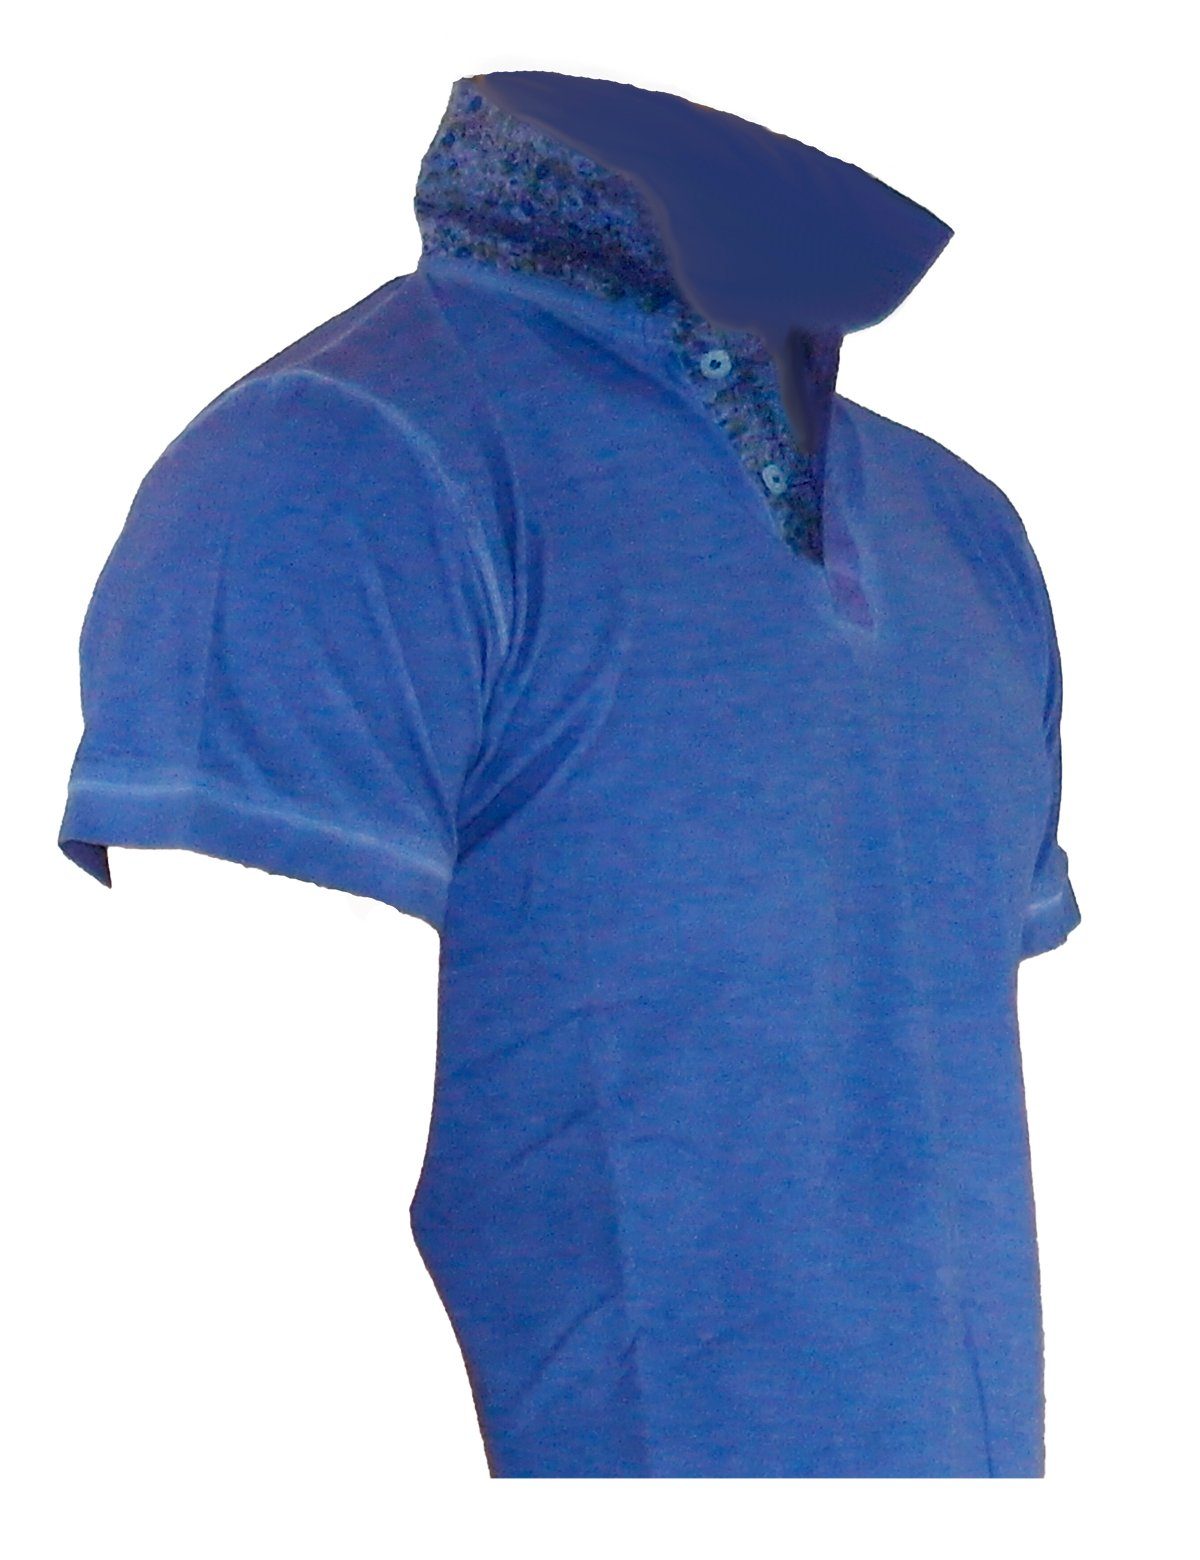 YESET Poloshirt Herren Shirt T-Shirt Poloshirt Tank Top Hemd Kurzarm Figurbetont A810 Blau